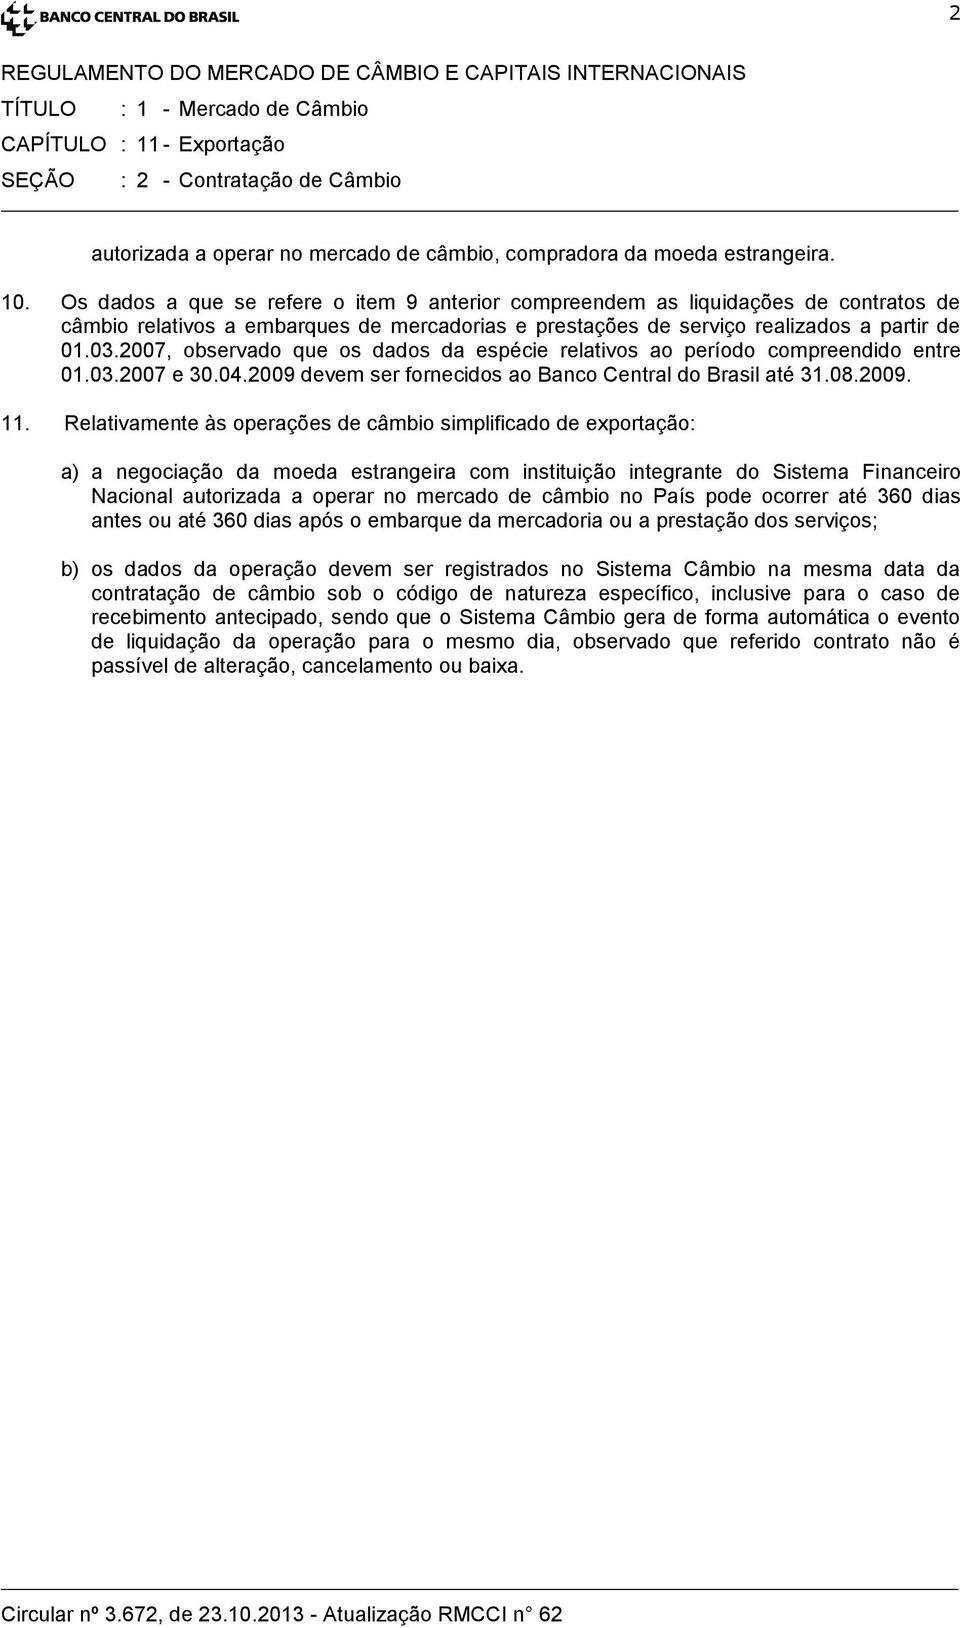 2007, observado que os dados da espécie relativos ao período compreendido entre 01.03.2007 e 30.04.2009 devem ser fornecidos ao Banco Central do Brasil até 31.08.2009. 11.